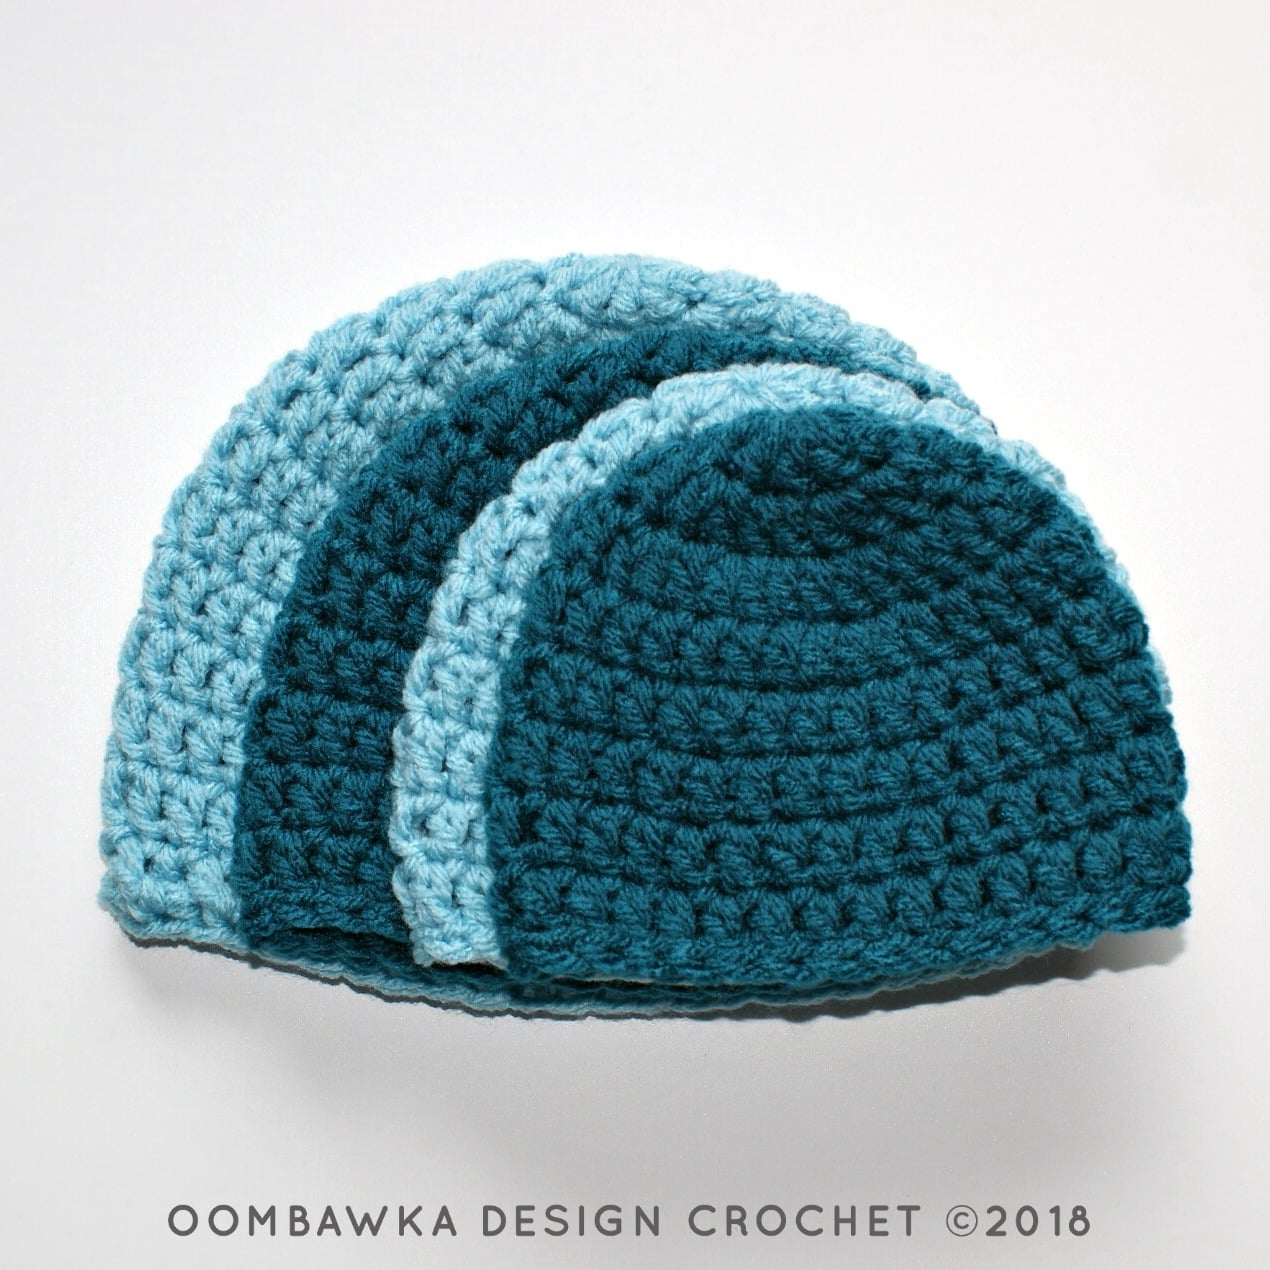 Crochet Winter Hat Free Pattern Simple Double Crochet Hat Pattern Oombawka Design Crochet